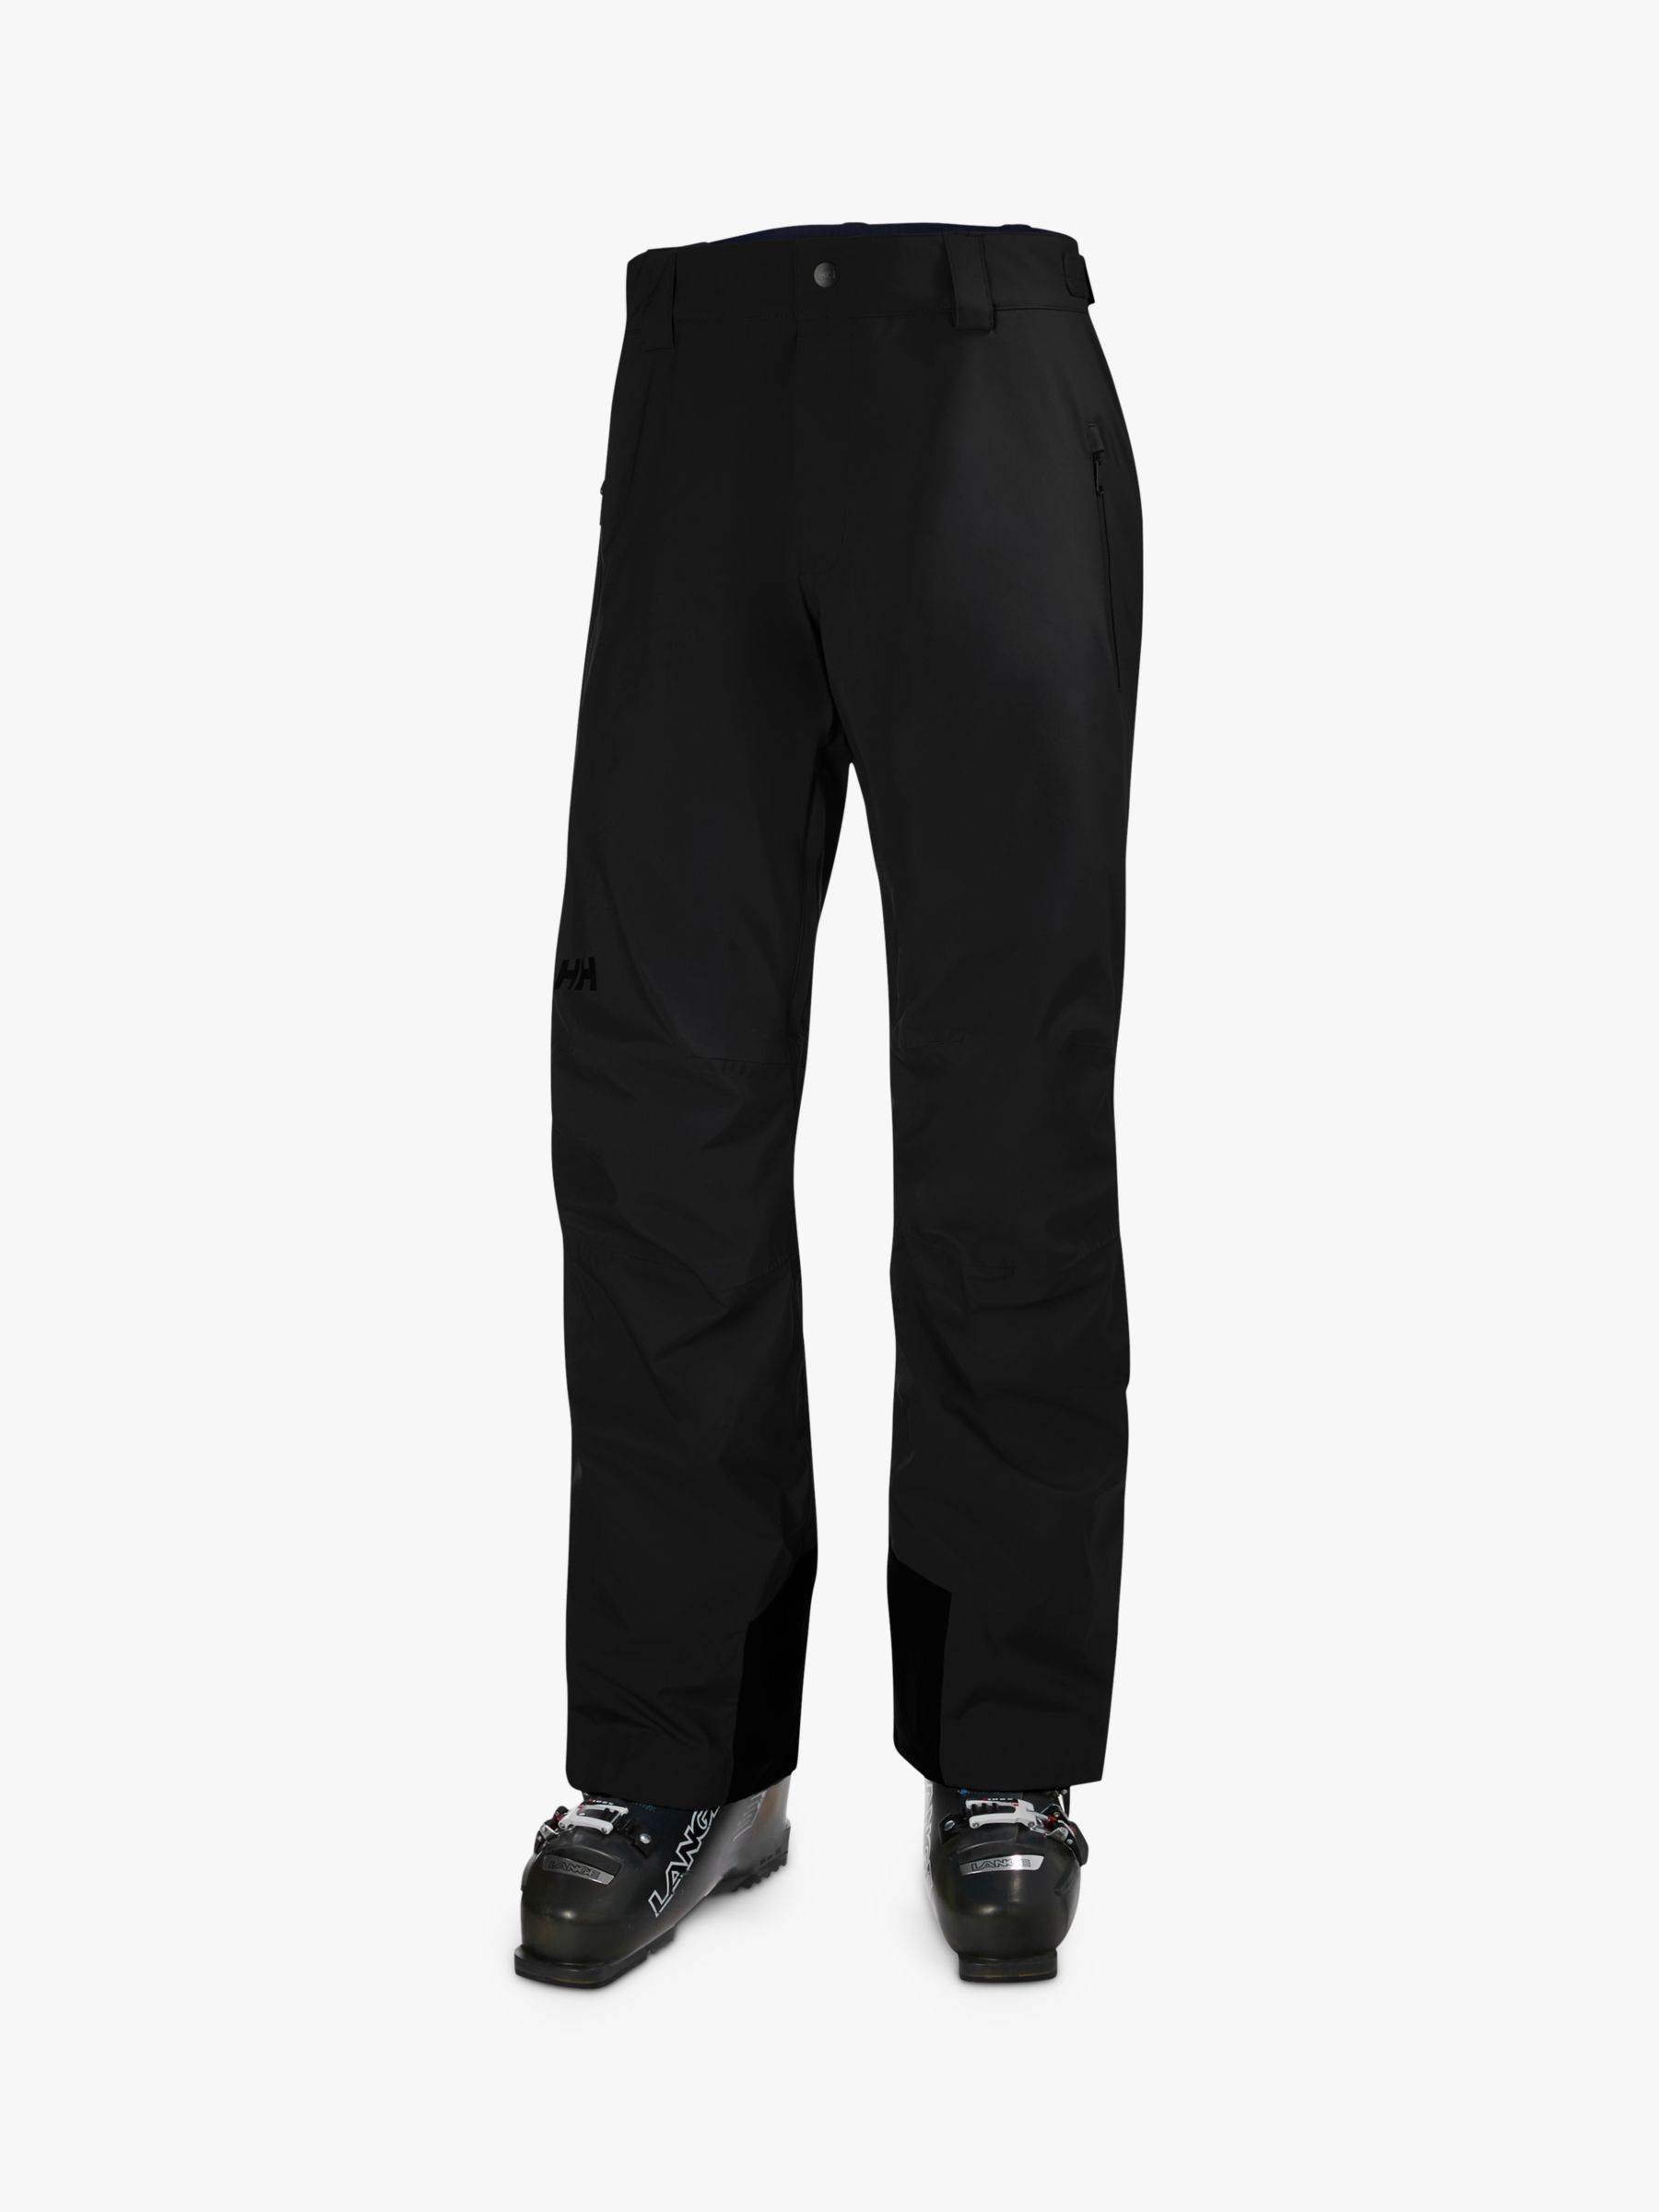 Helly Hansen Legendary Insulated Men's Ski Pants, Black, S